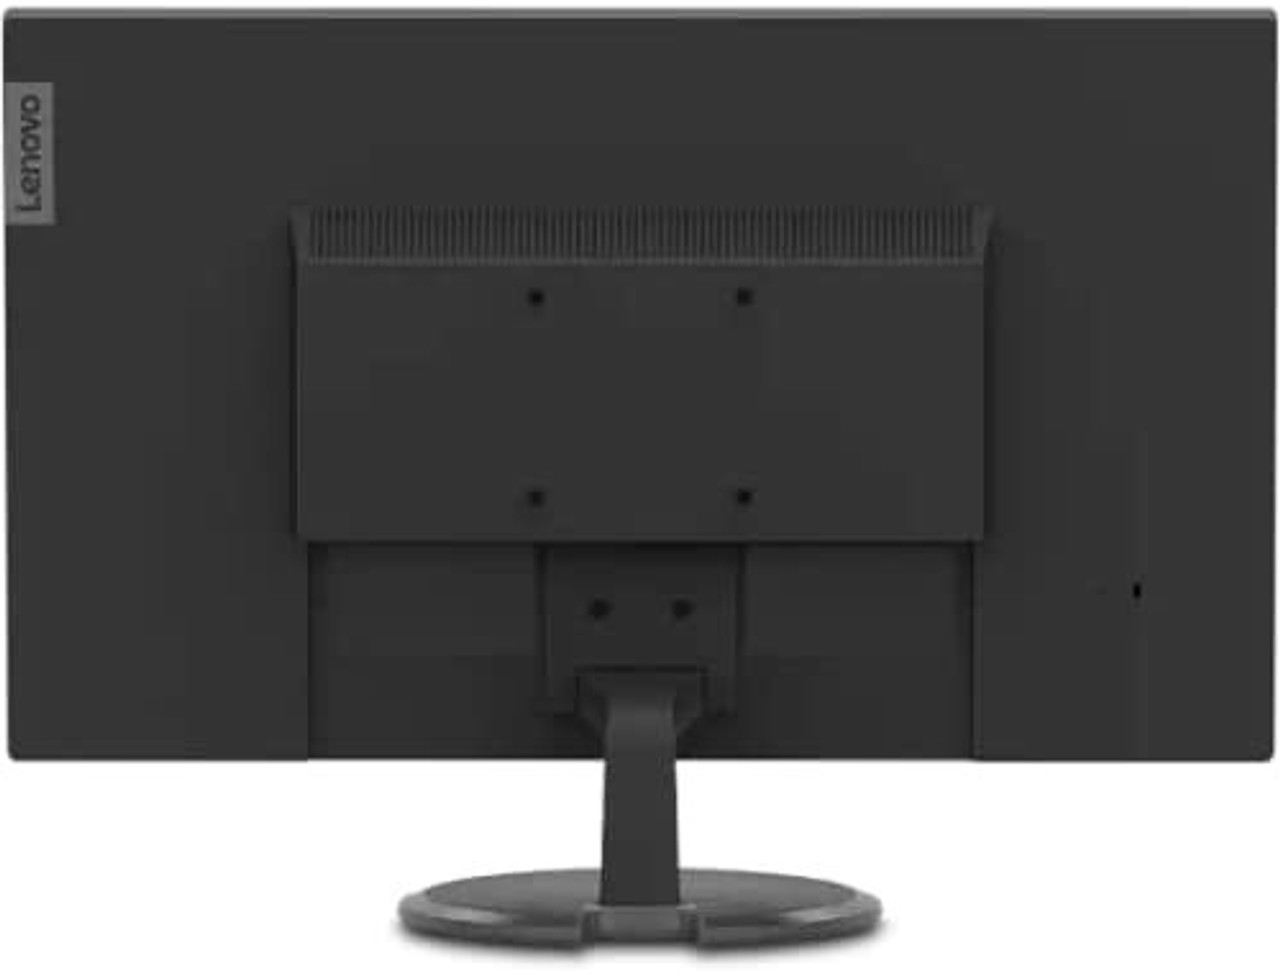 Lenovo ThinkVision C27-30 27" Monitor 62AAKAR6US Full HD WLED LCD - 16:9 - Raven Black (Pack of 2)